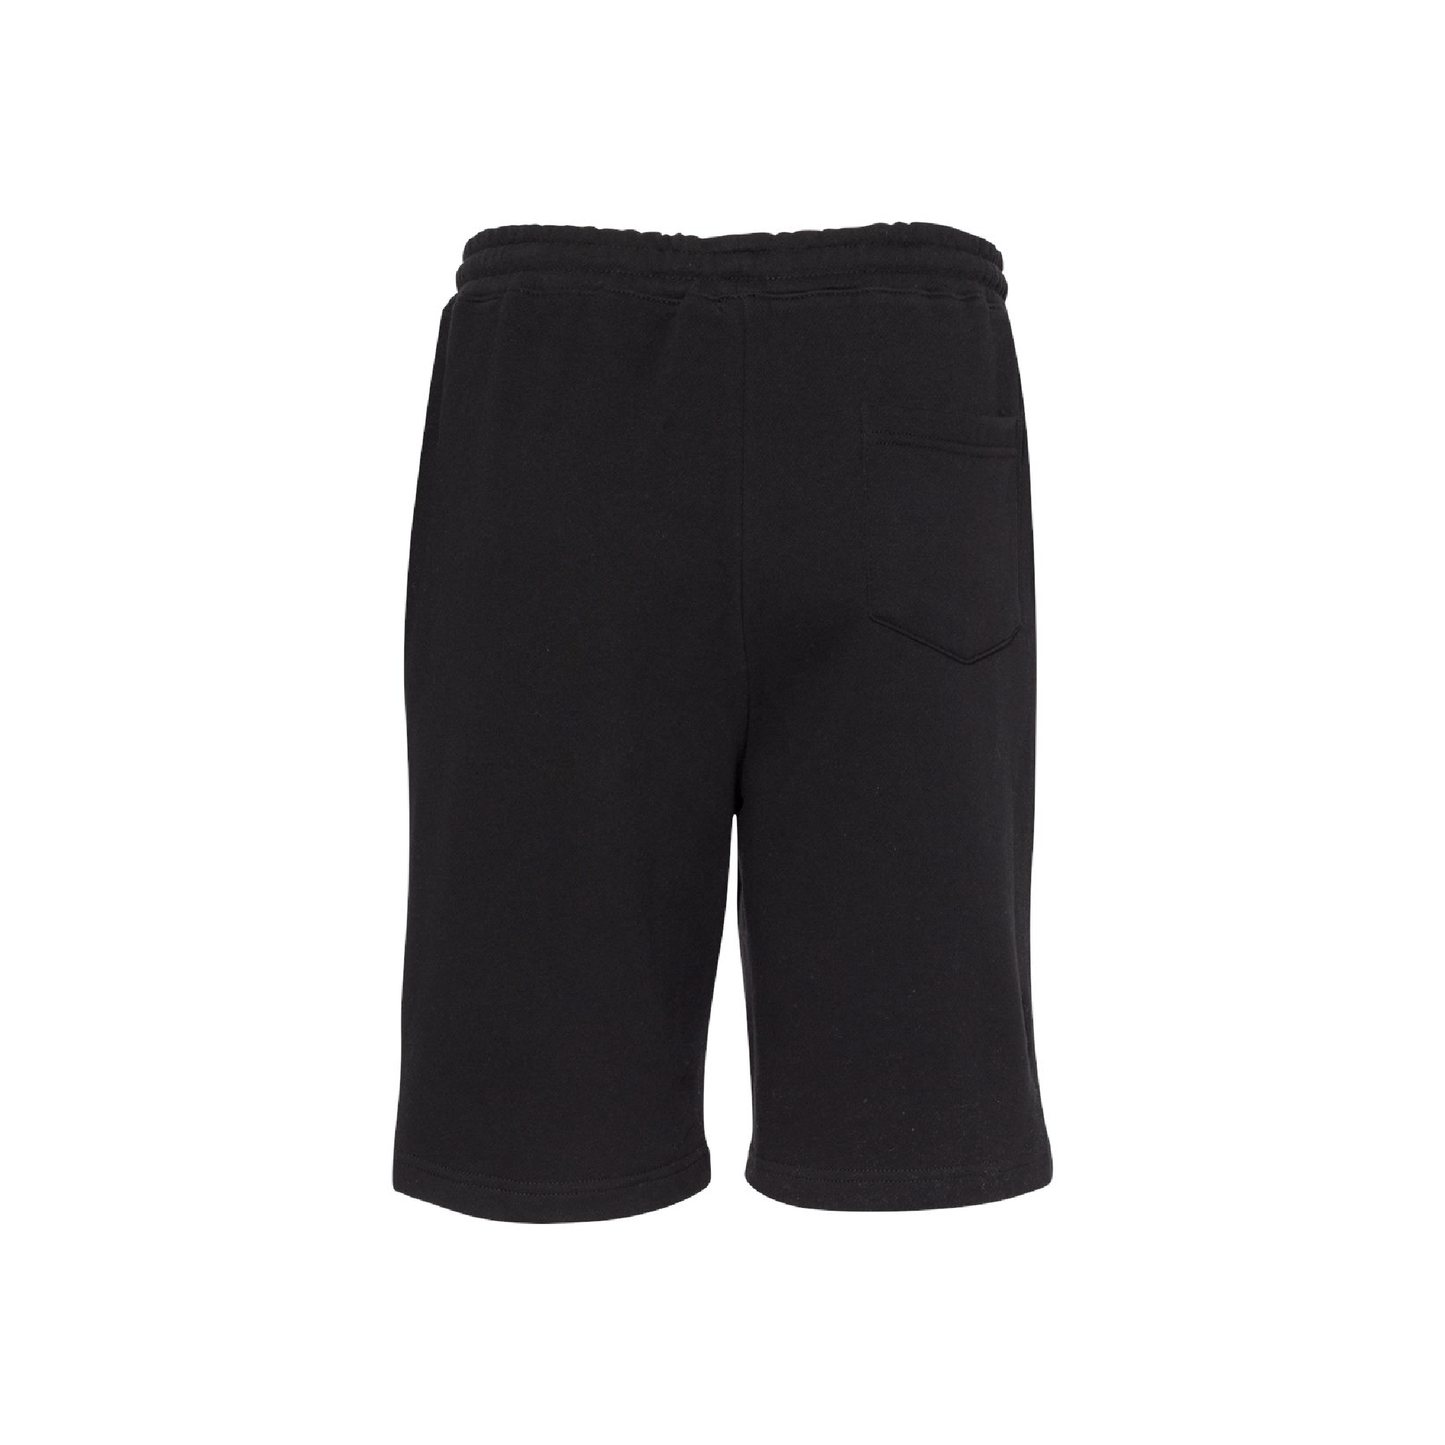 AD -- Unisex Midweight Fleece Shorts